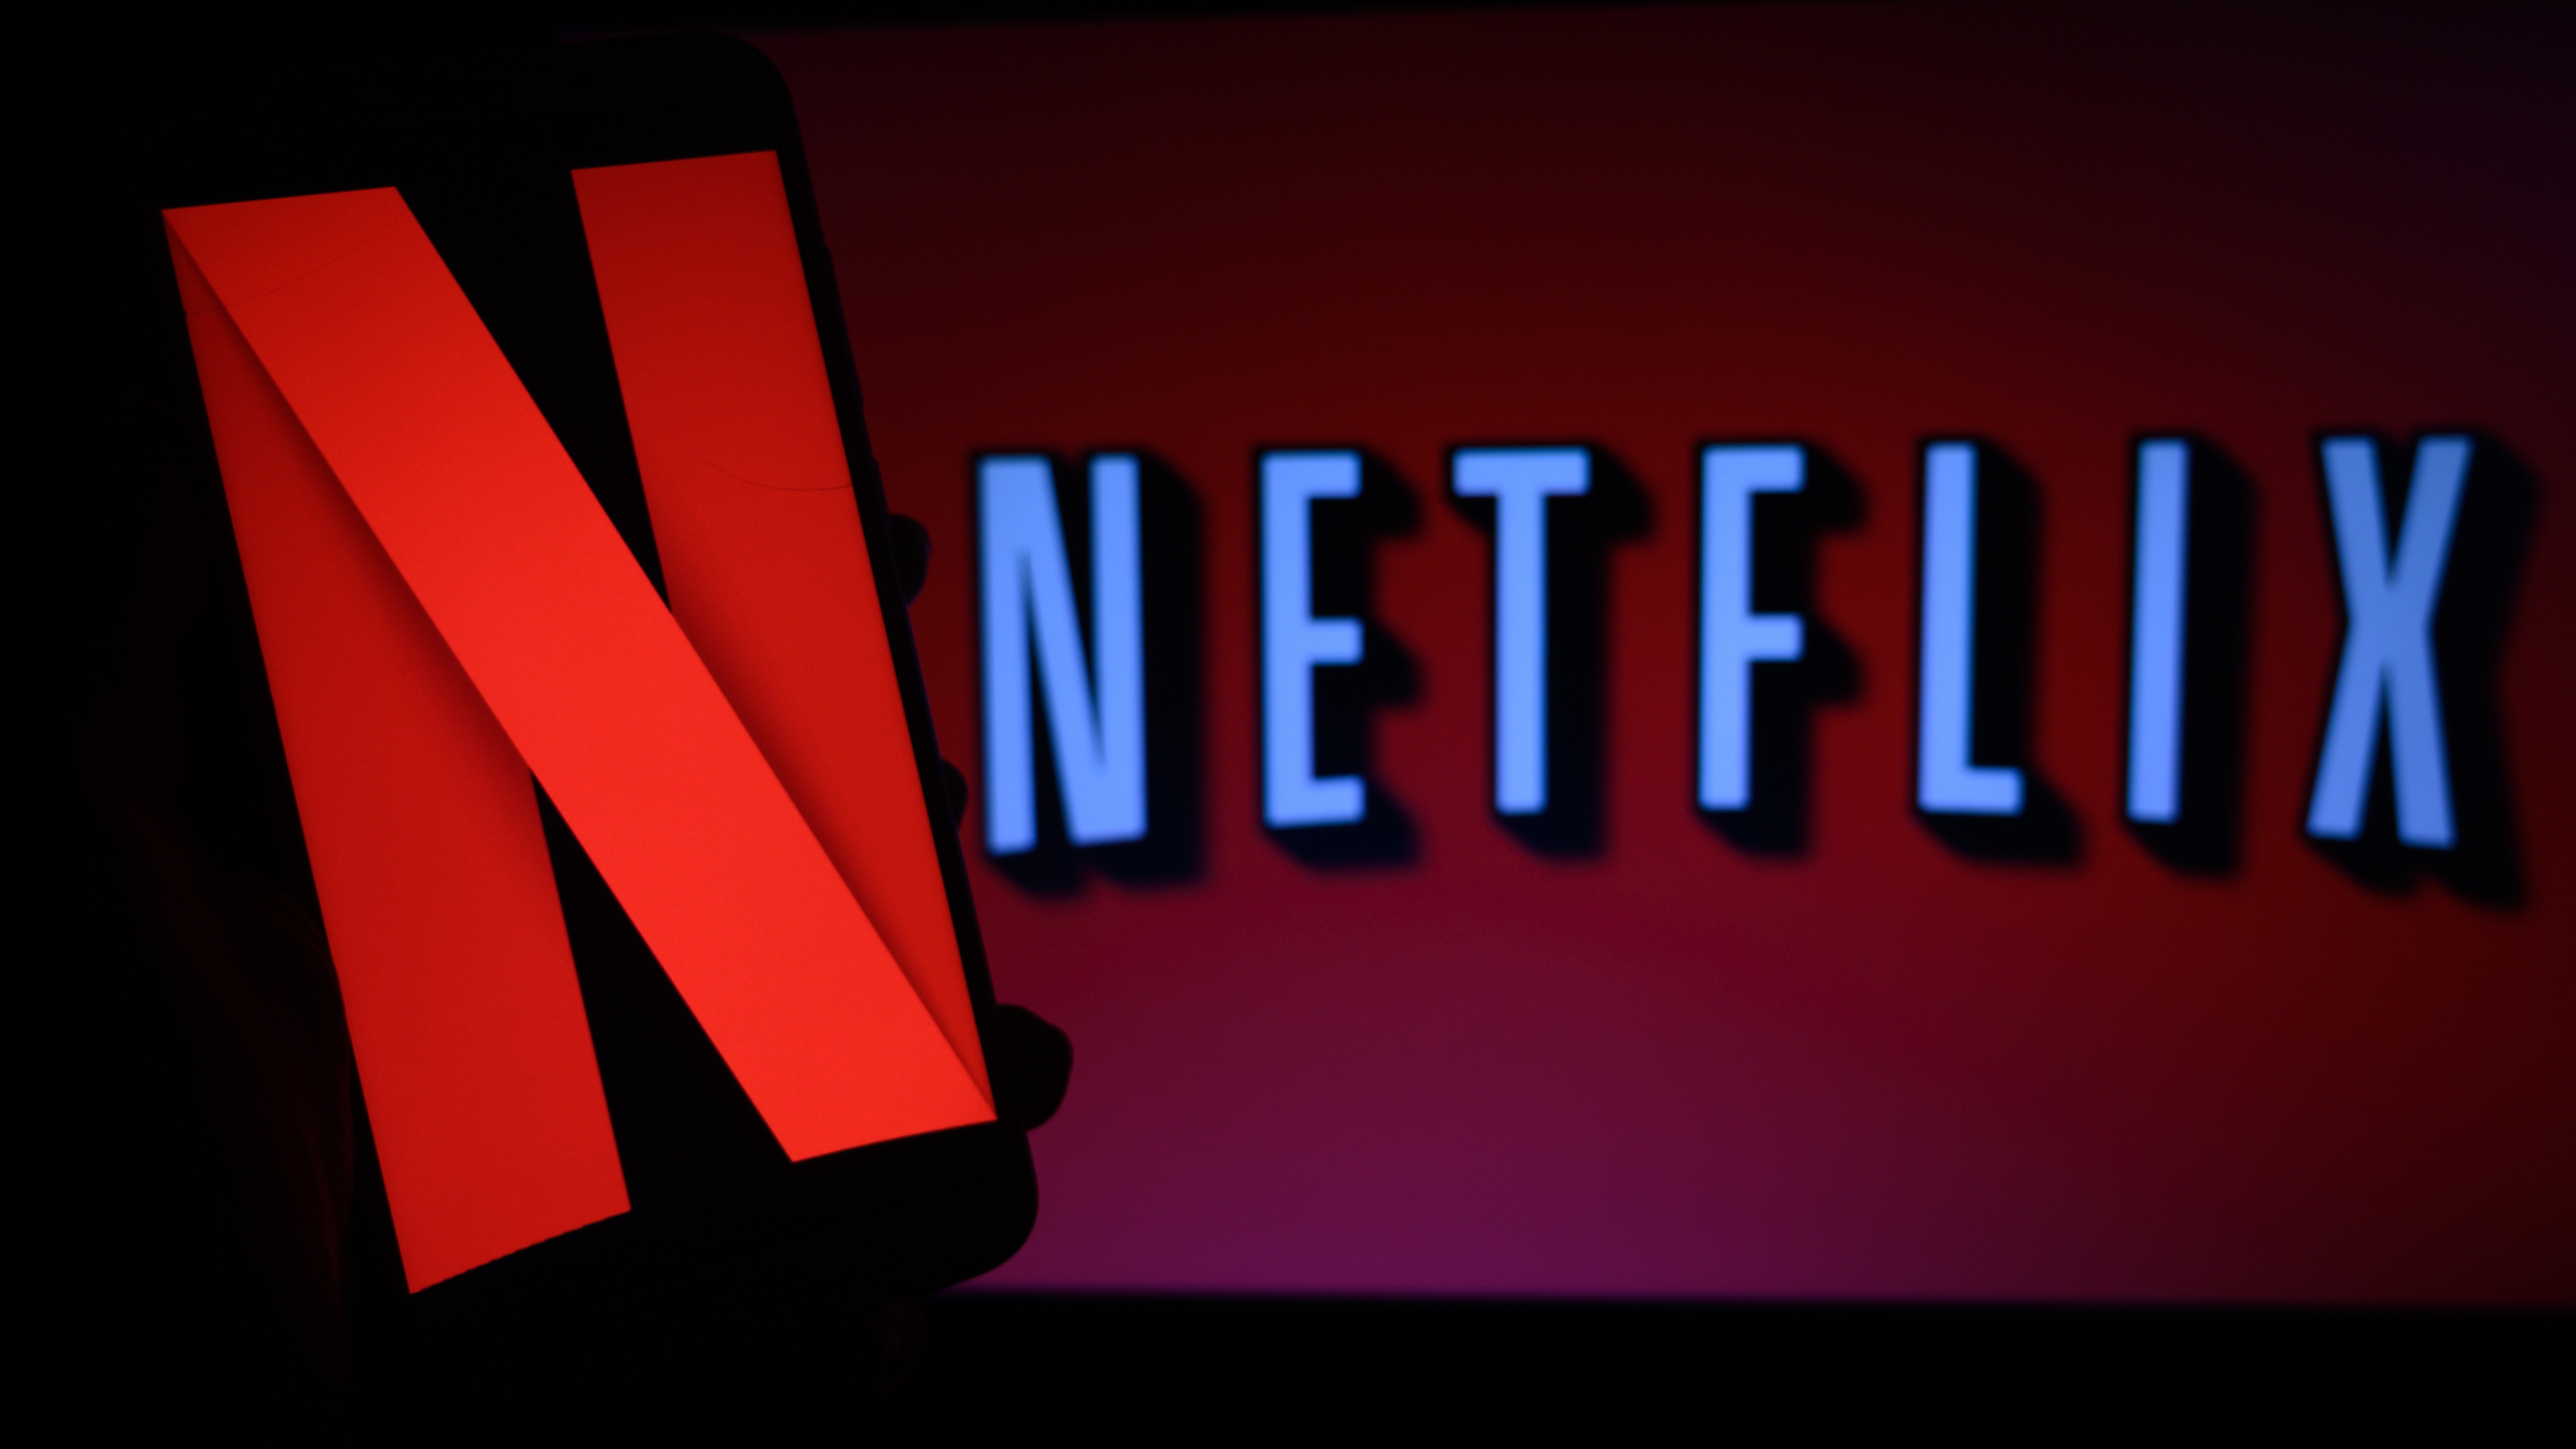 تخبر Netflix الموظفين بإنفاق أموال الشركة “بحكمة” بعد خسائر كبيرة في المشتركين